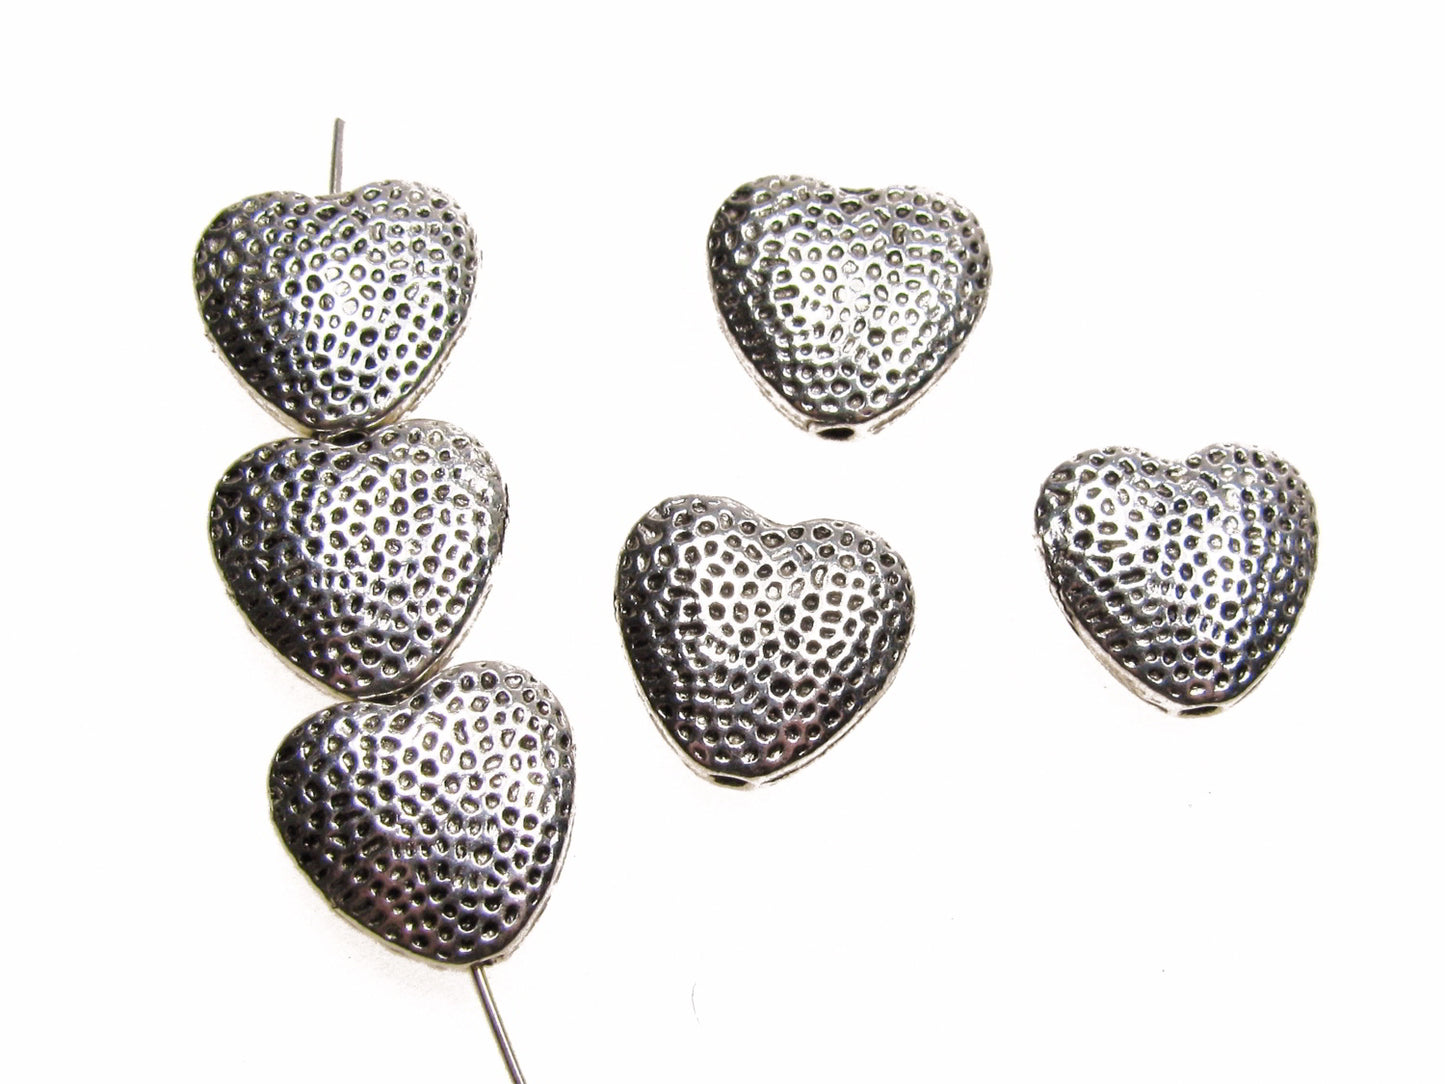 12 Metallperlen Herz silberfarben mit Muster 1,3cm, Zwischenperle, Schmuck machen